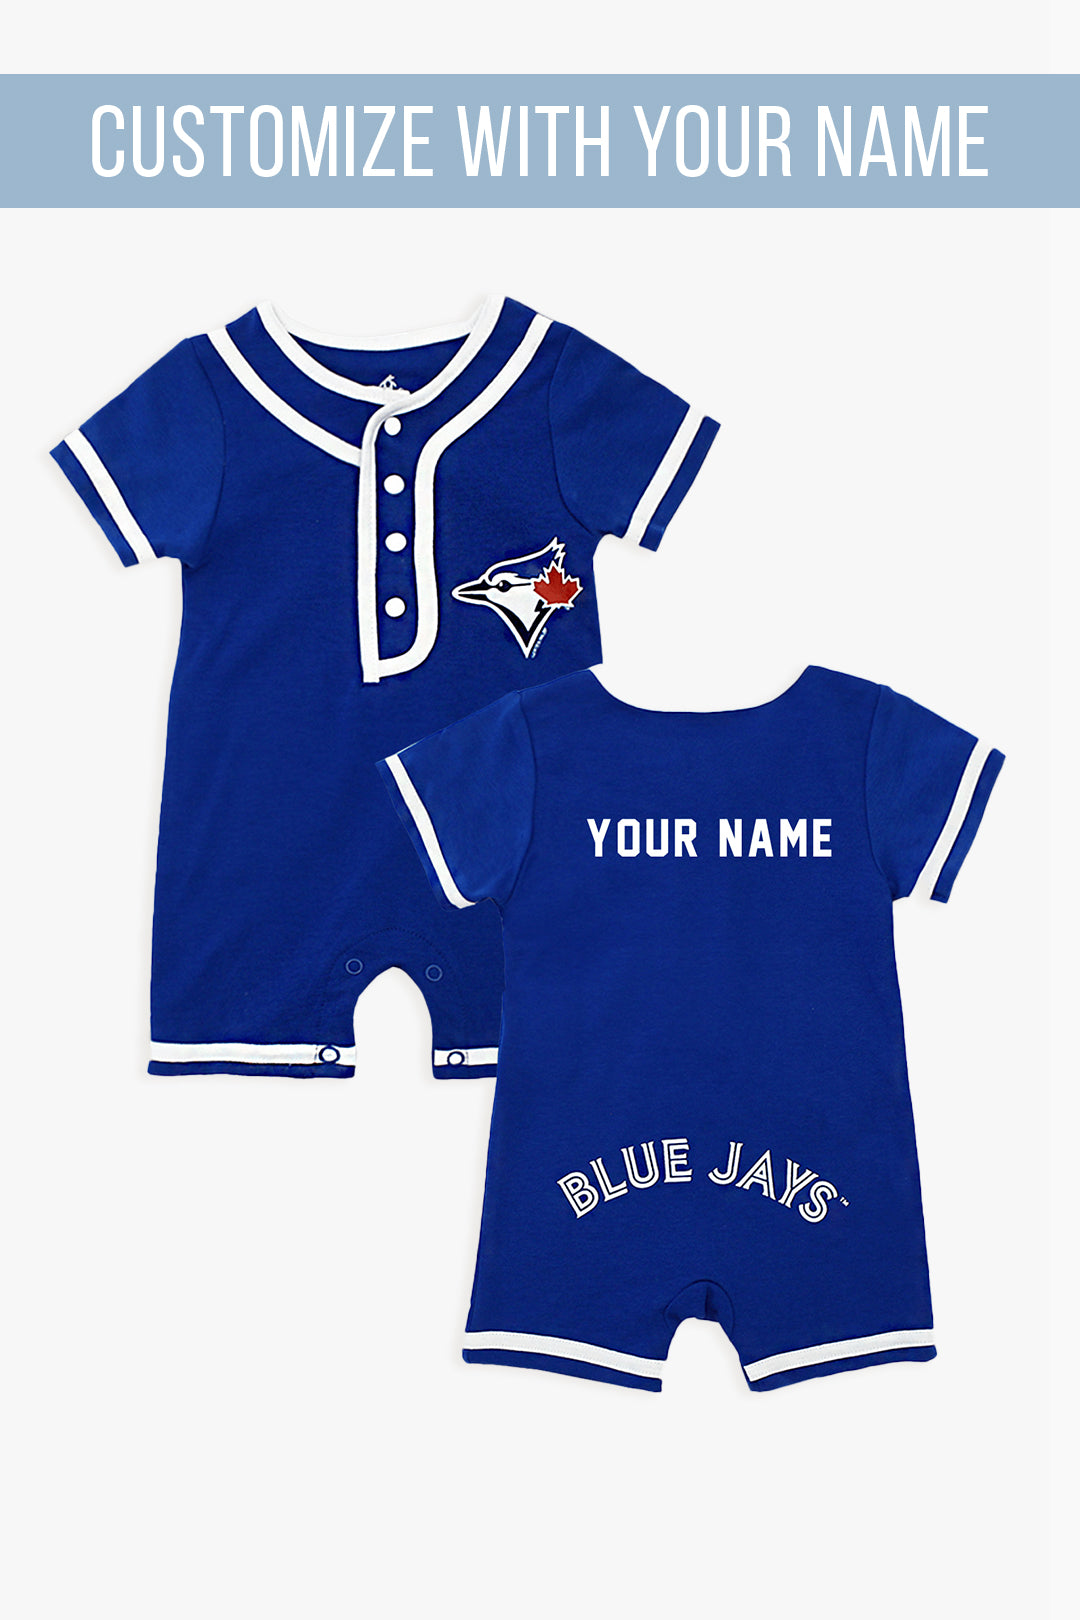 MLB Blue Jays Custom Name Romper